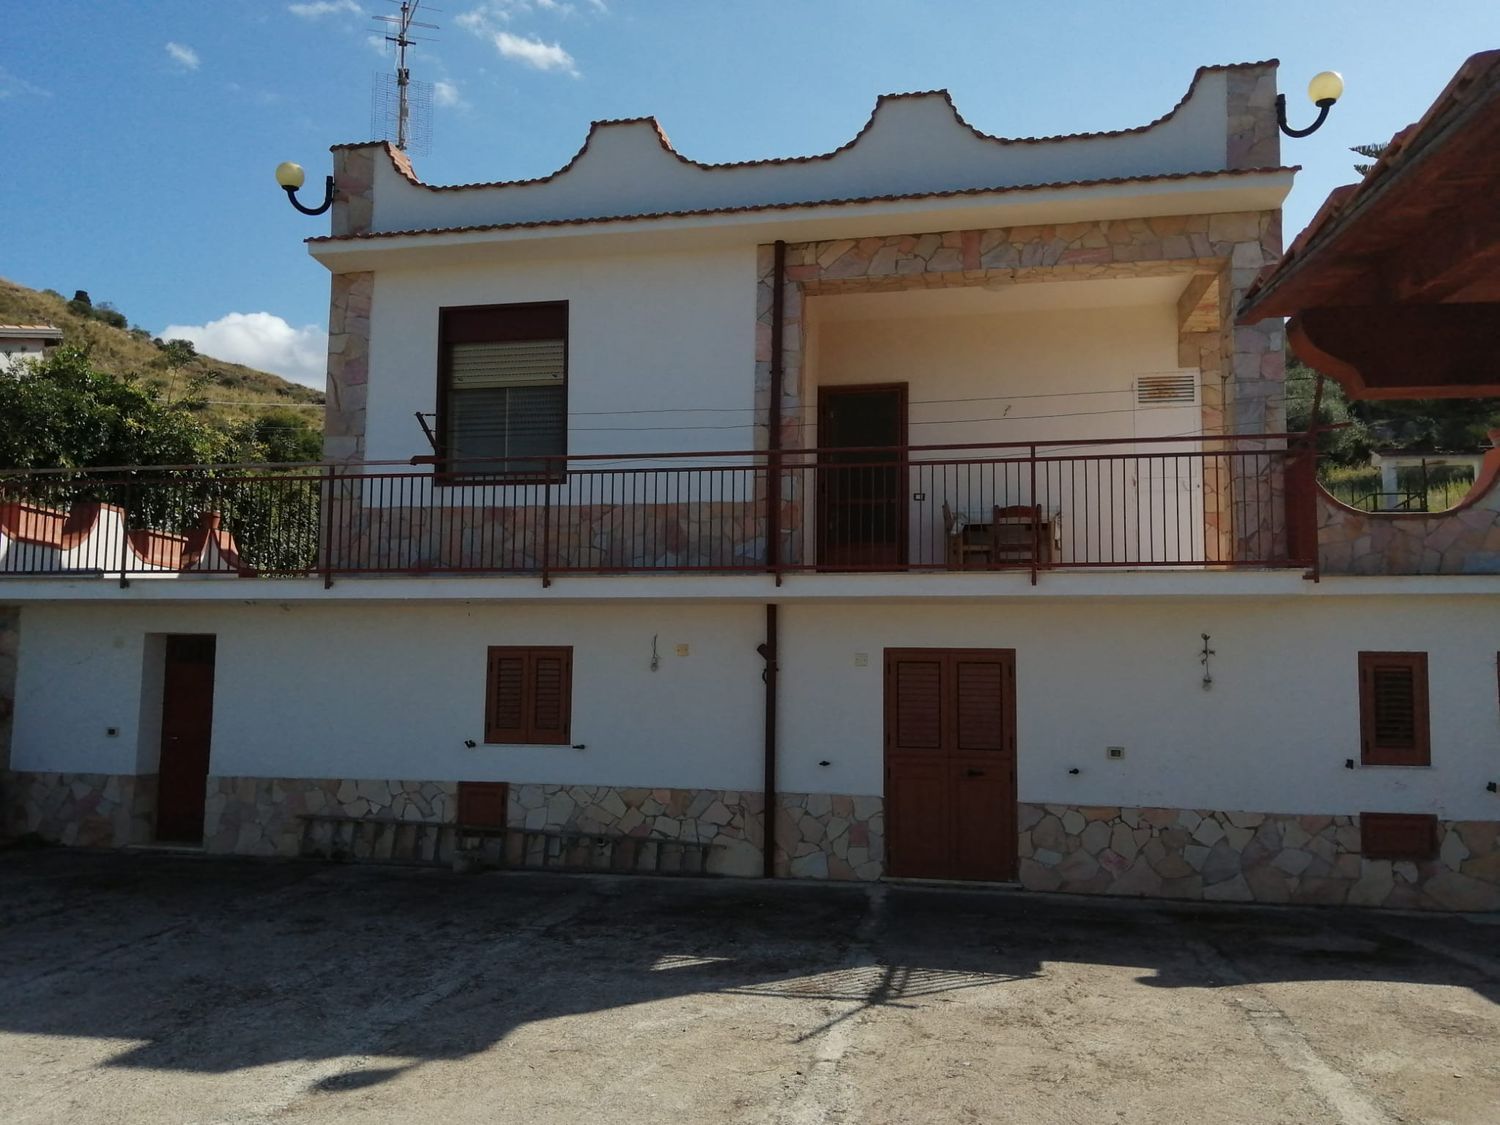 Villa in vendita in contrada impalastro 0, Termini Imerese